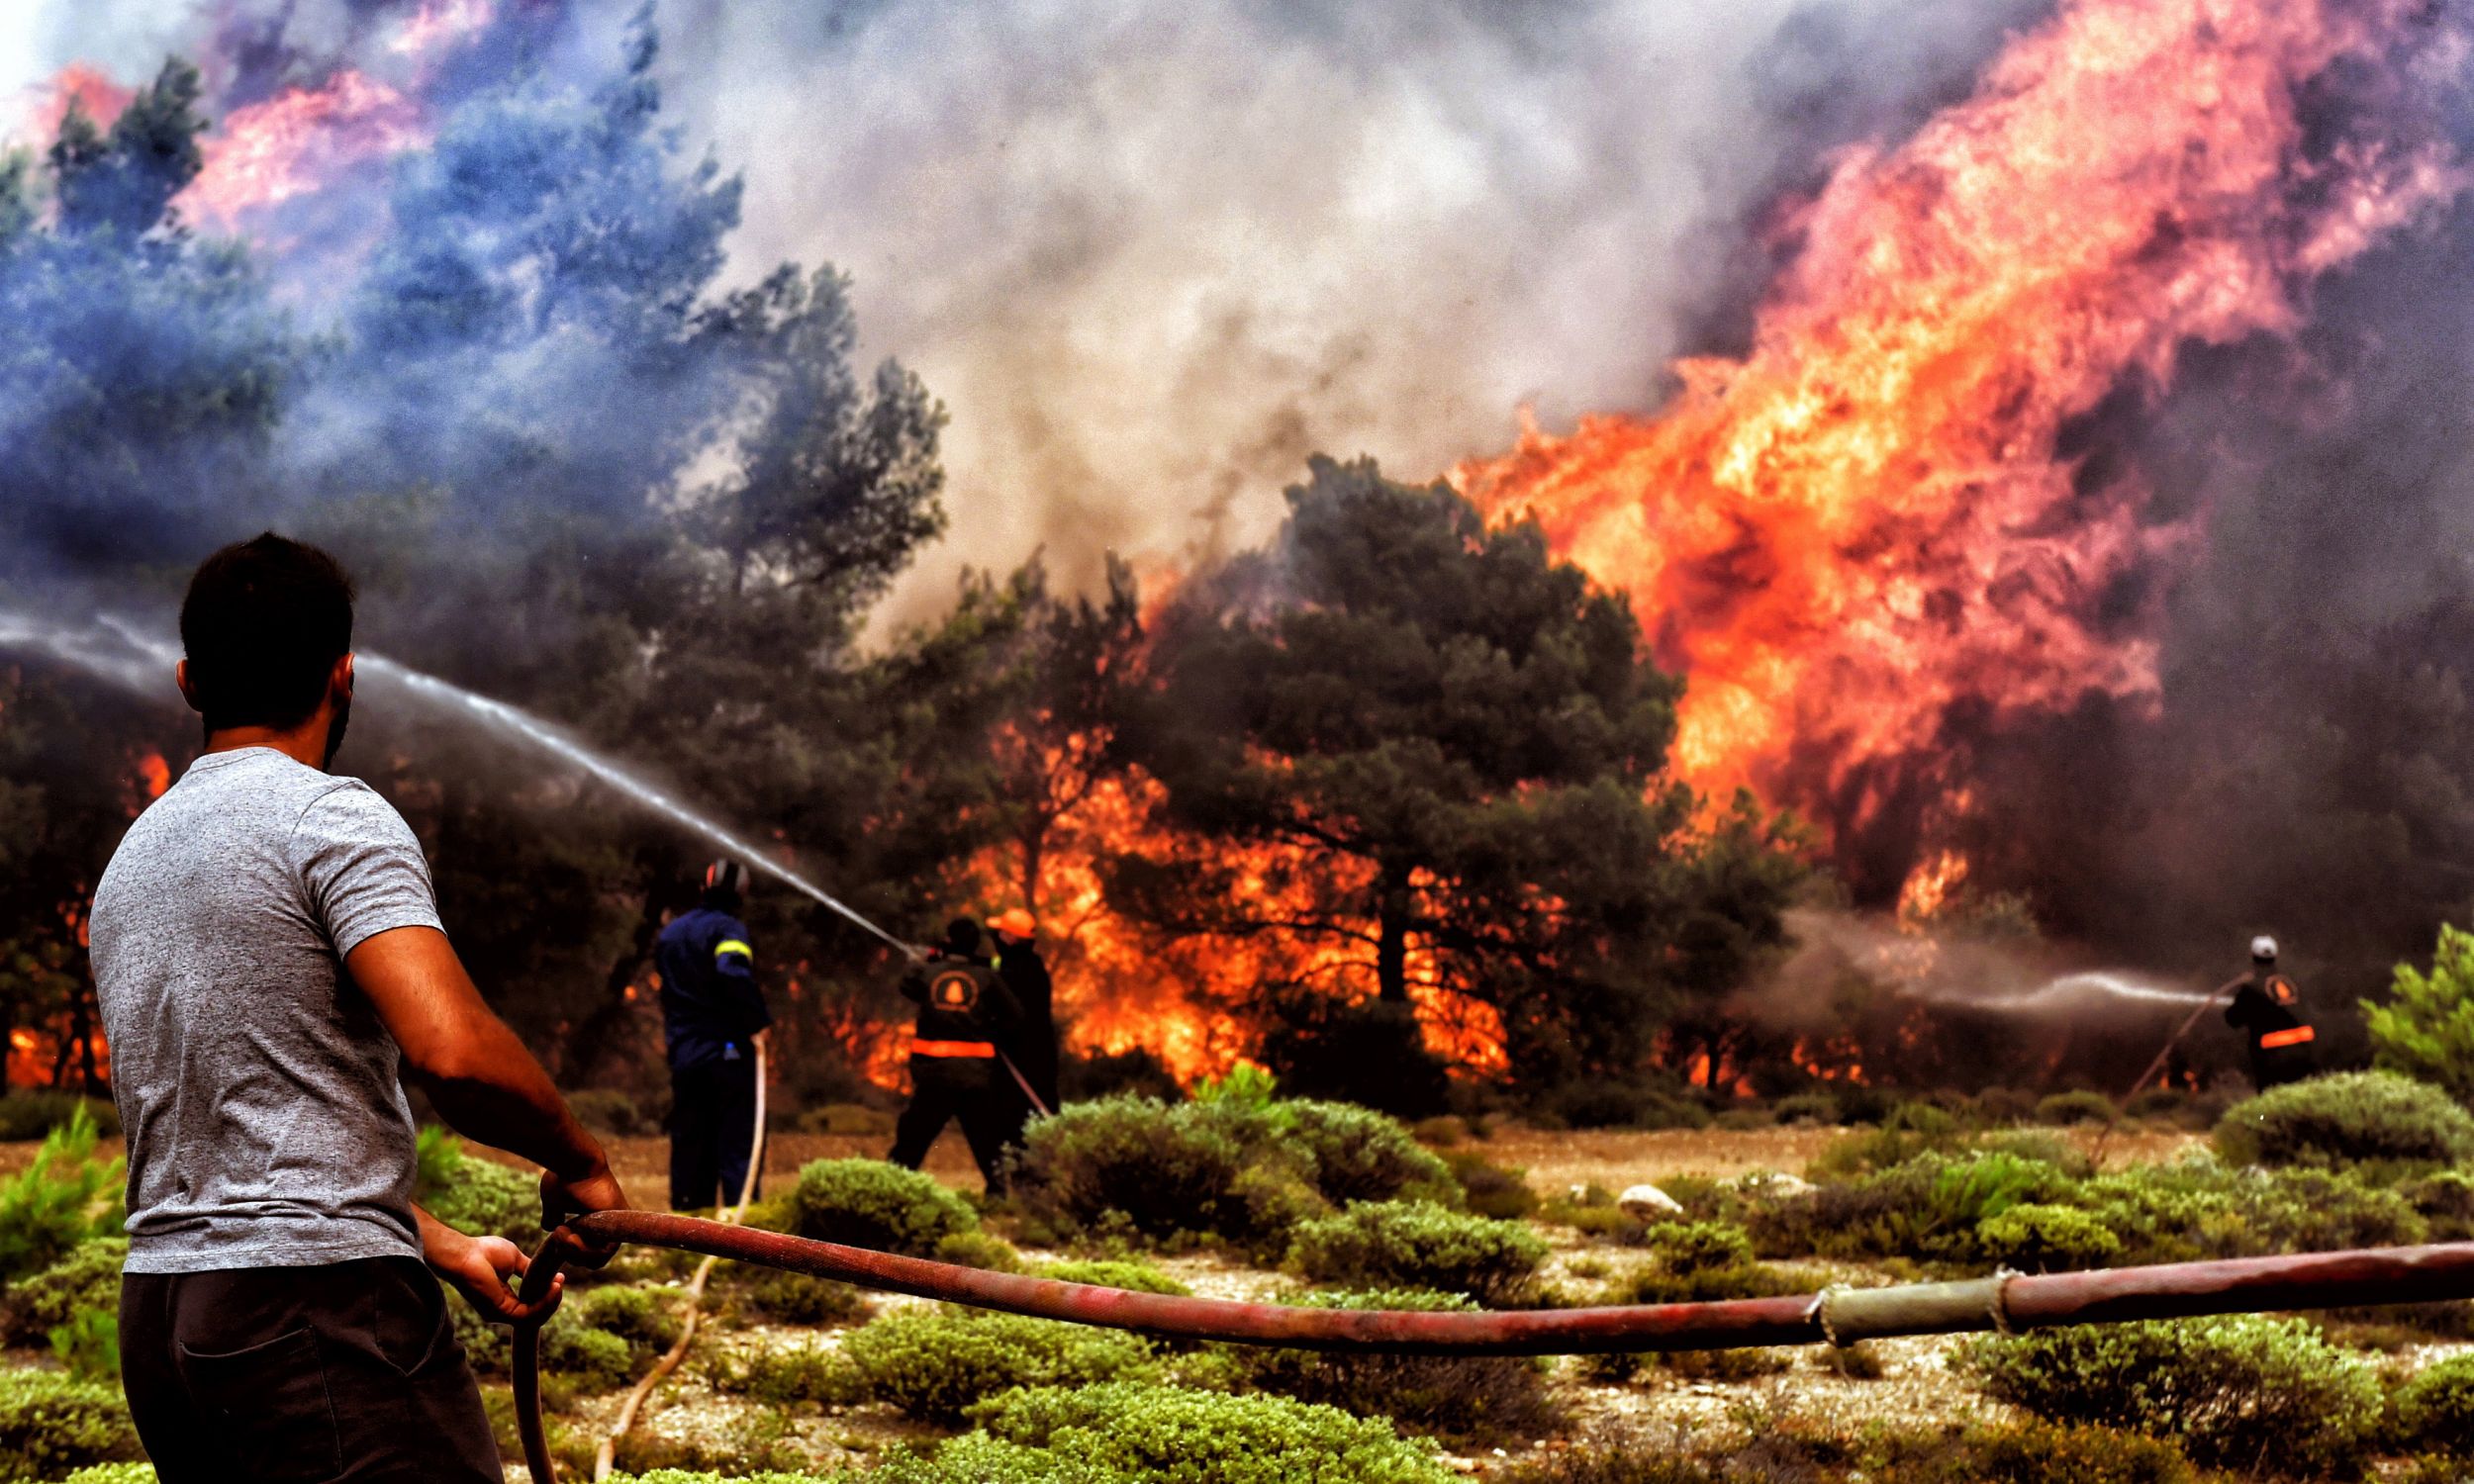 24 lipca 2018 r. Strażacy i wolontariusze próbują ugasić pożar w Verori, w pobliżu miasta Loutraki na Peloponezie w południowej Grecji. Władze ewakuowały ludzi z okolic Loutraki i obozu dla dzieci w rejonie Alepohori po wybuchu ognia w Kineta. Dwa najwięsze pożary w Kineta i Kallitechnoupolis, doprowadziły do śmierci co najmniej 74 osób. Do Kineta posłano 150 strażaków z 74 wozami, samoloty przeciwpożarowe i helikoptery. Fot. PAP/EPA / VASSILIS PSOMAS